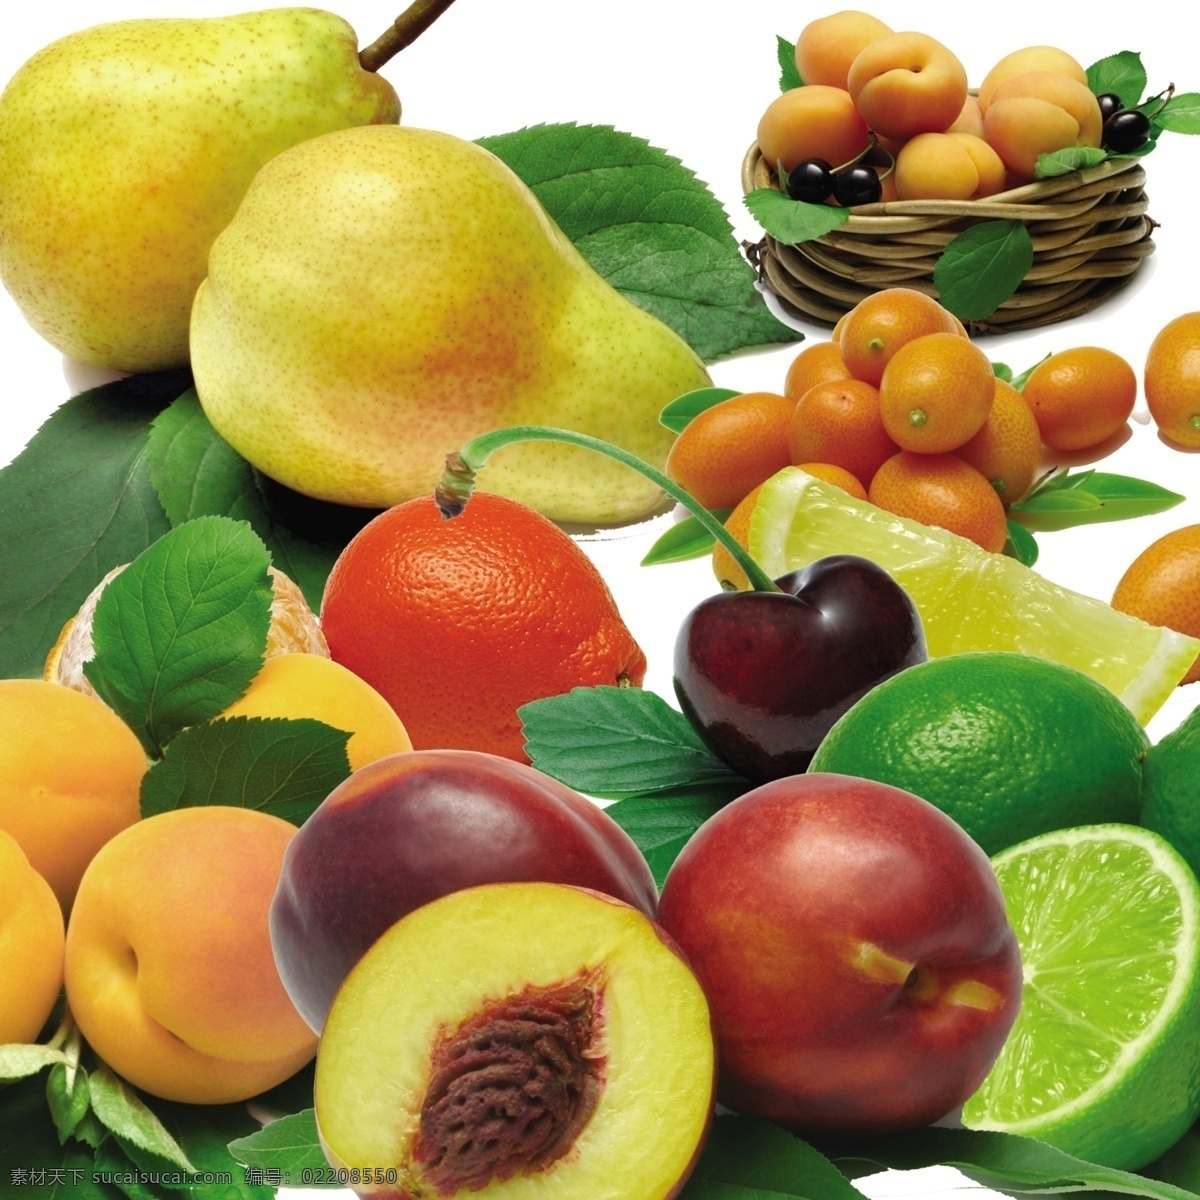 分层 橘子 柠檬 苹果 水果 水果缤纷 水果素材 水果图 图 模板下载 雪梨 桃子 樱桃 果缤纷 源文件